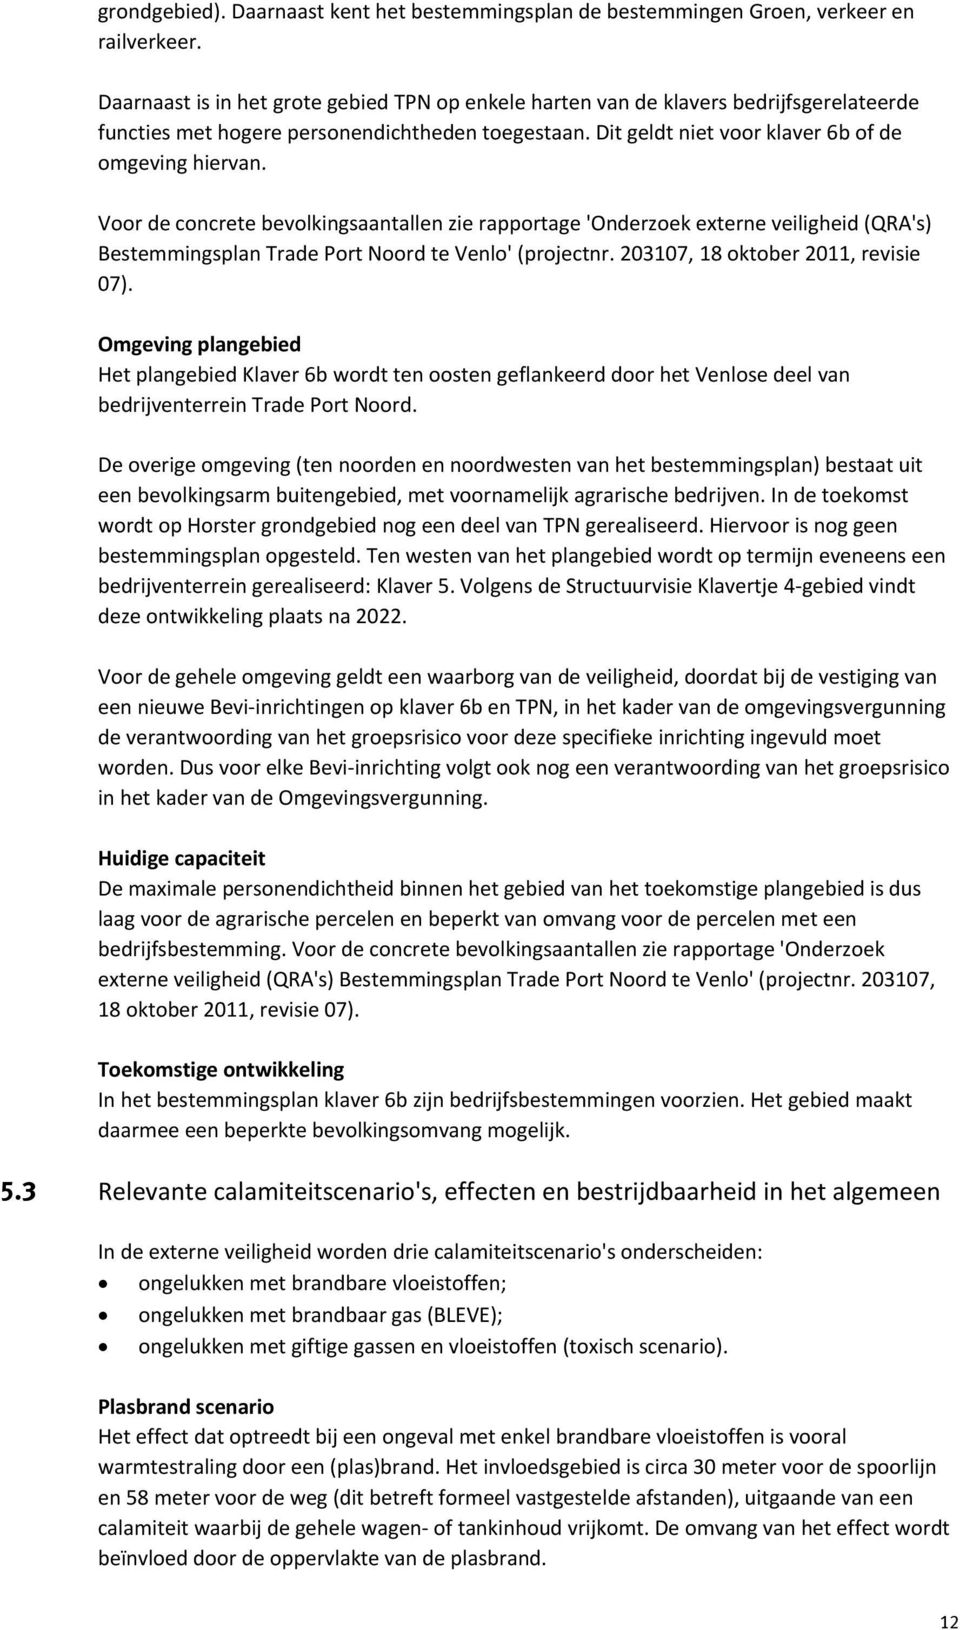 Voor de concrete bevolkingsaantallen zie rapportage 'Onderzoek externe veiligheid (QRA's) Bestemmingsplan Trade Port Noord te Venlo' (projectnr. 203107, 18 oktober 2011, revisie 07).